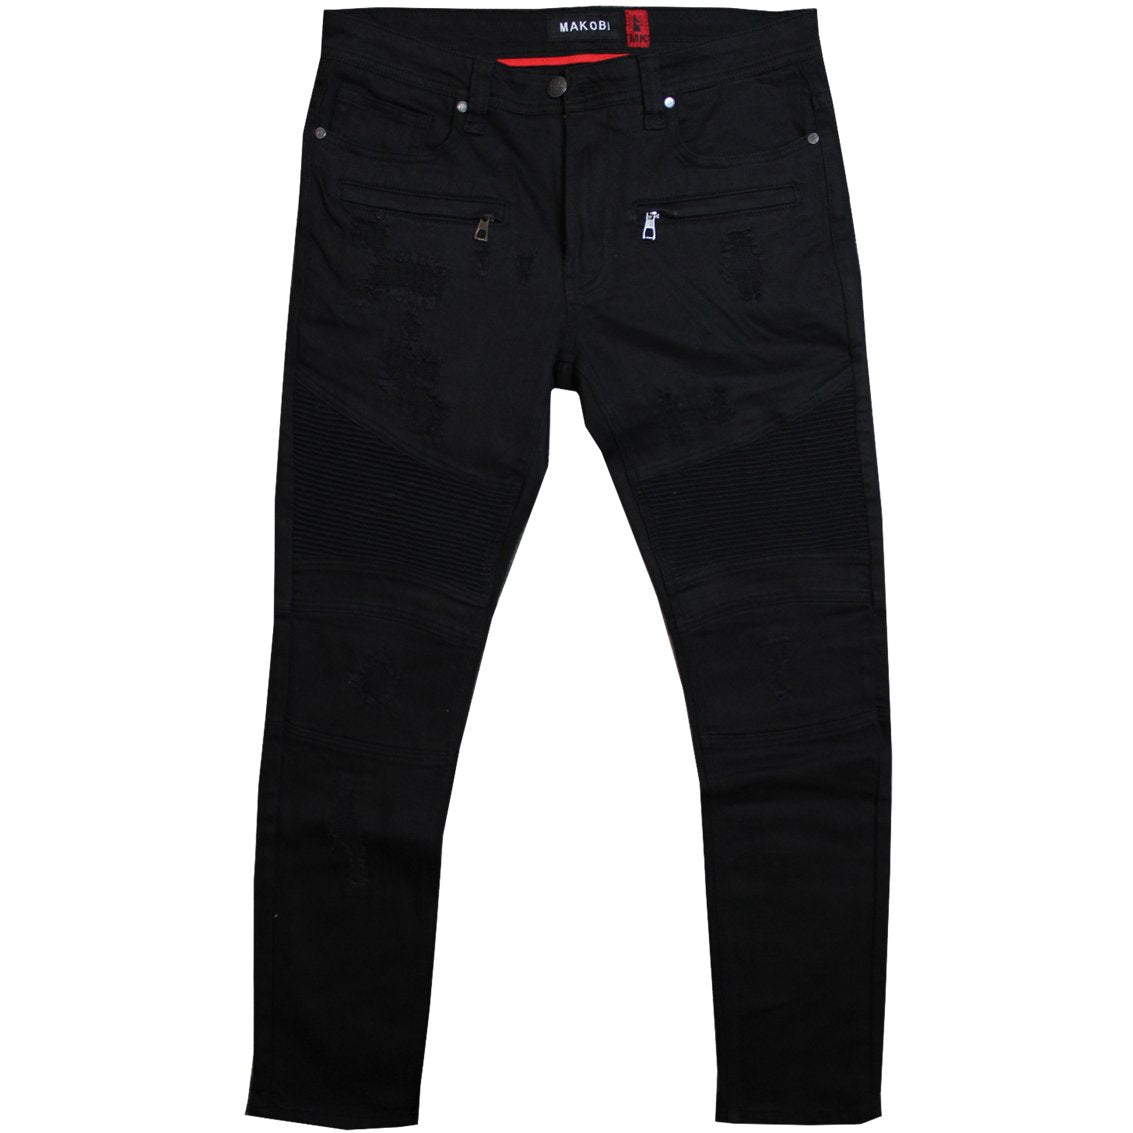 M1786 Makobi Prado Biker Jeans with Rip & Repair - Black/Black